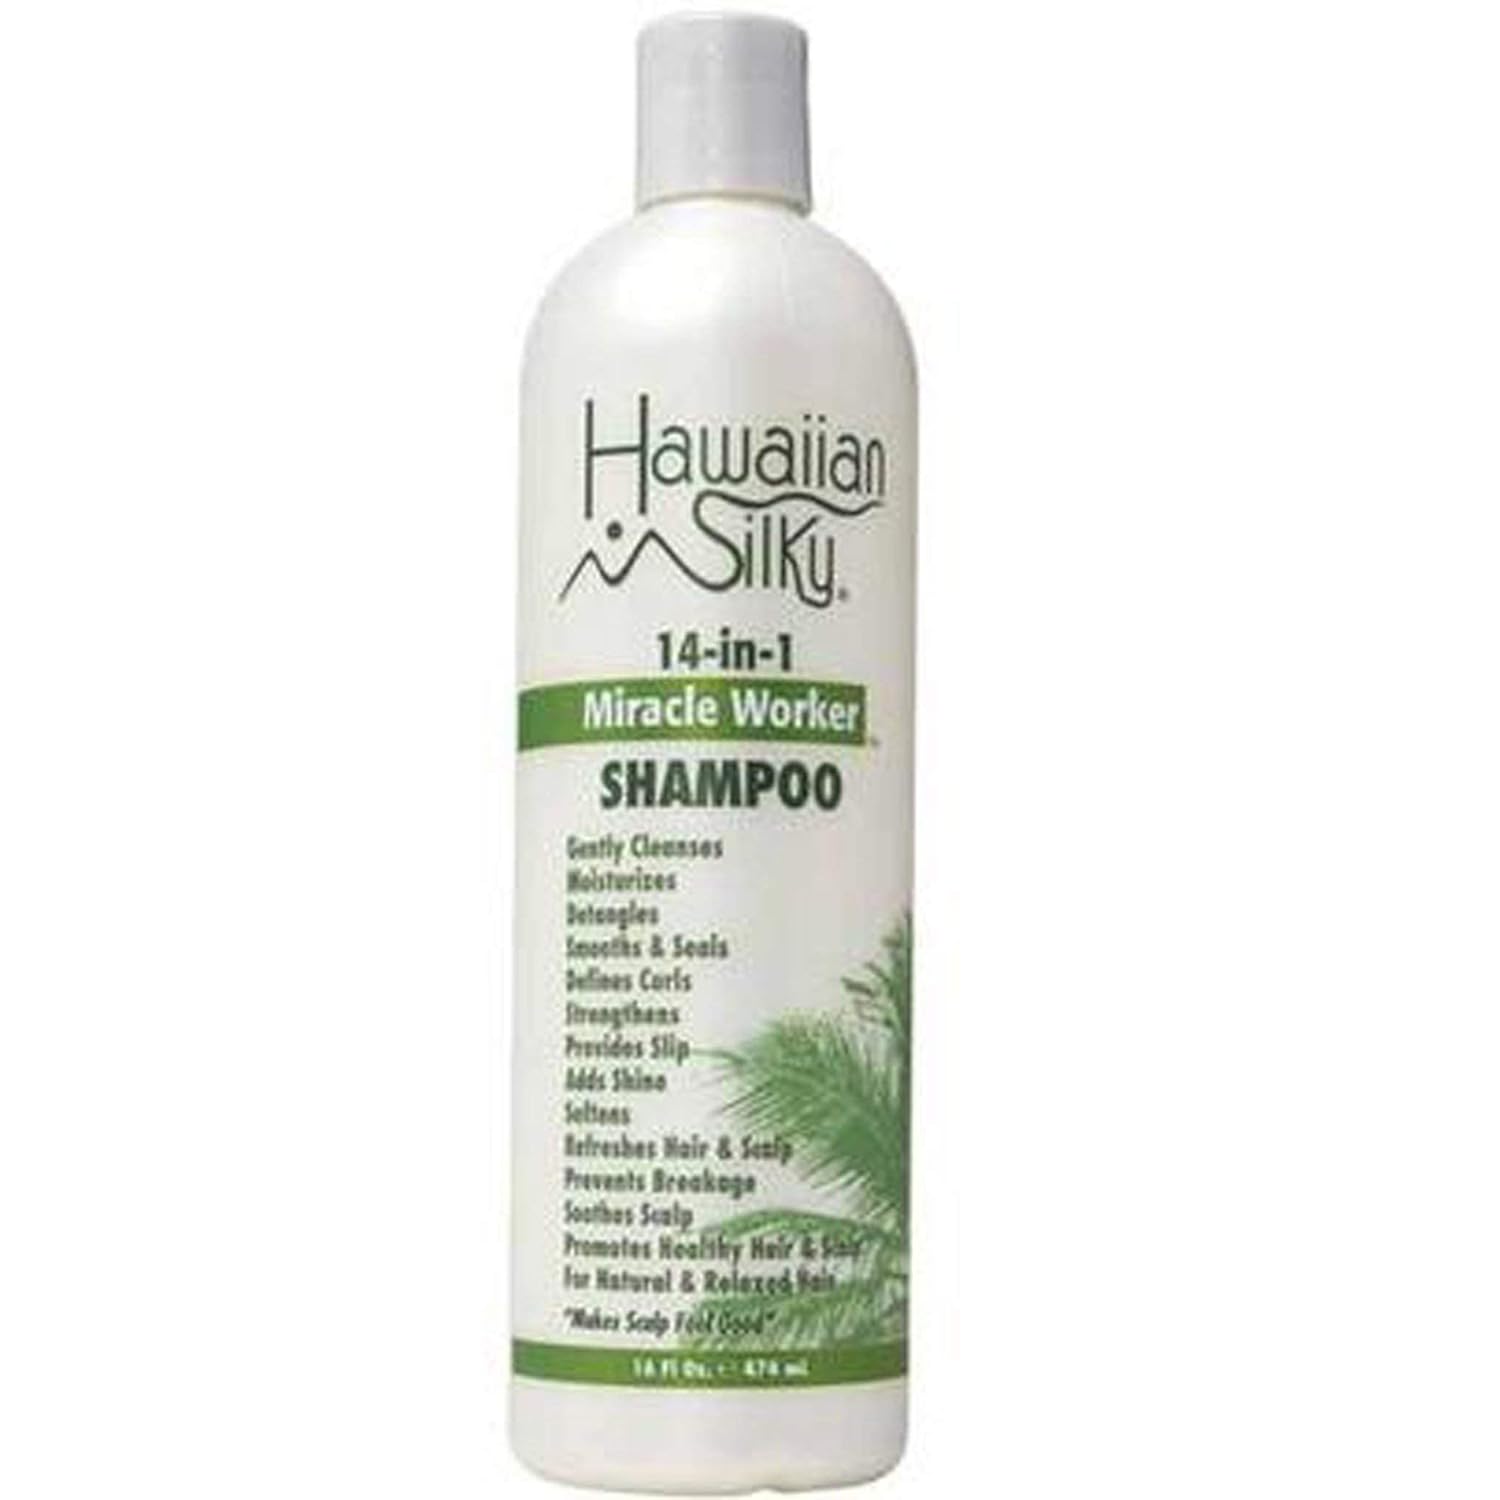 Hawaiian Silky 14-In-1 Miracle Worker Shampoo, 16 Oz (AF8125)